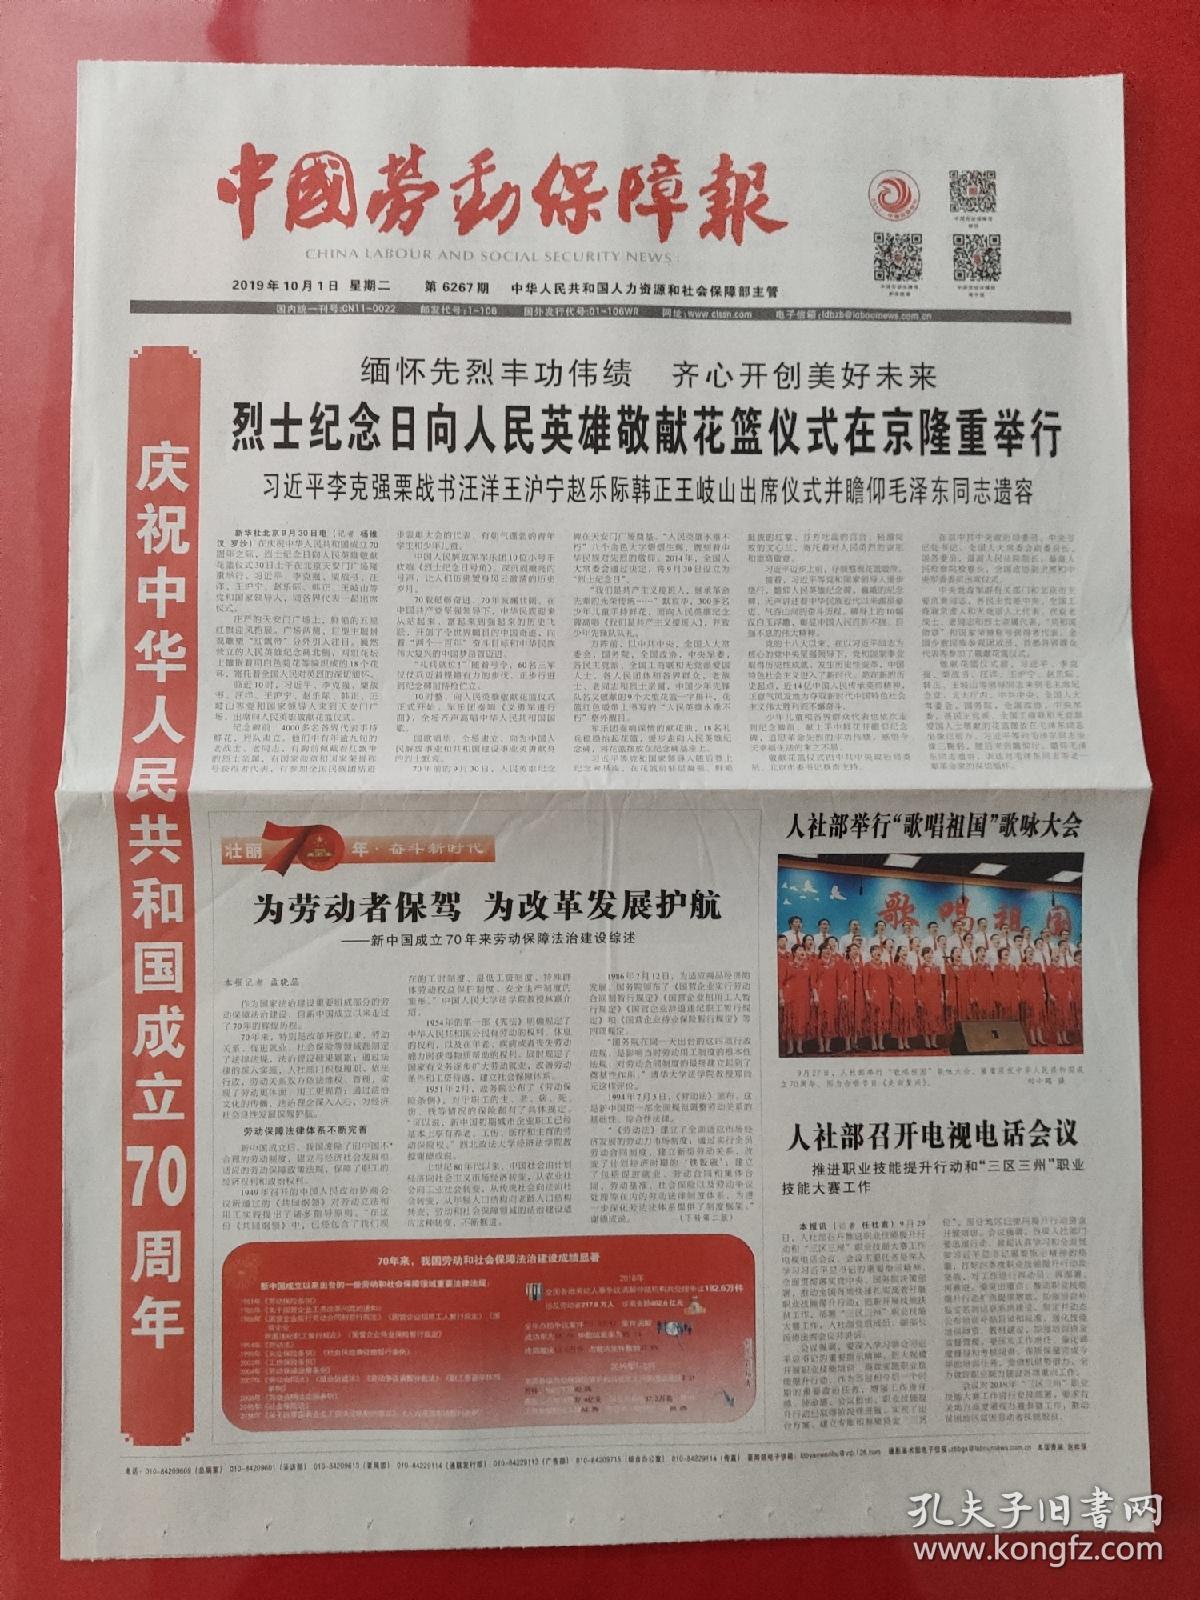 中国劳动保障报2019年10月1日。庆祝中华